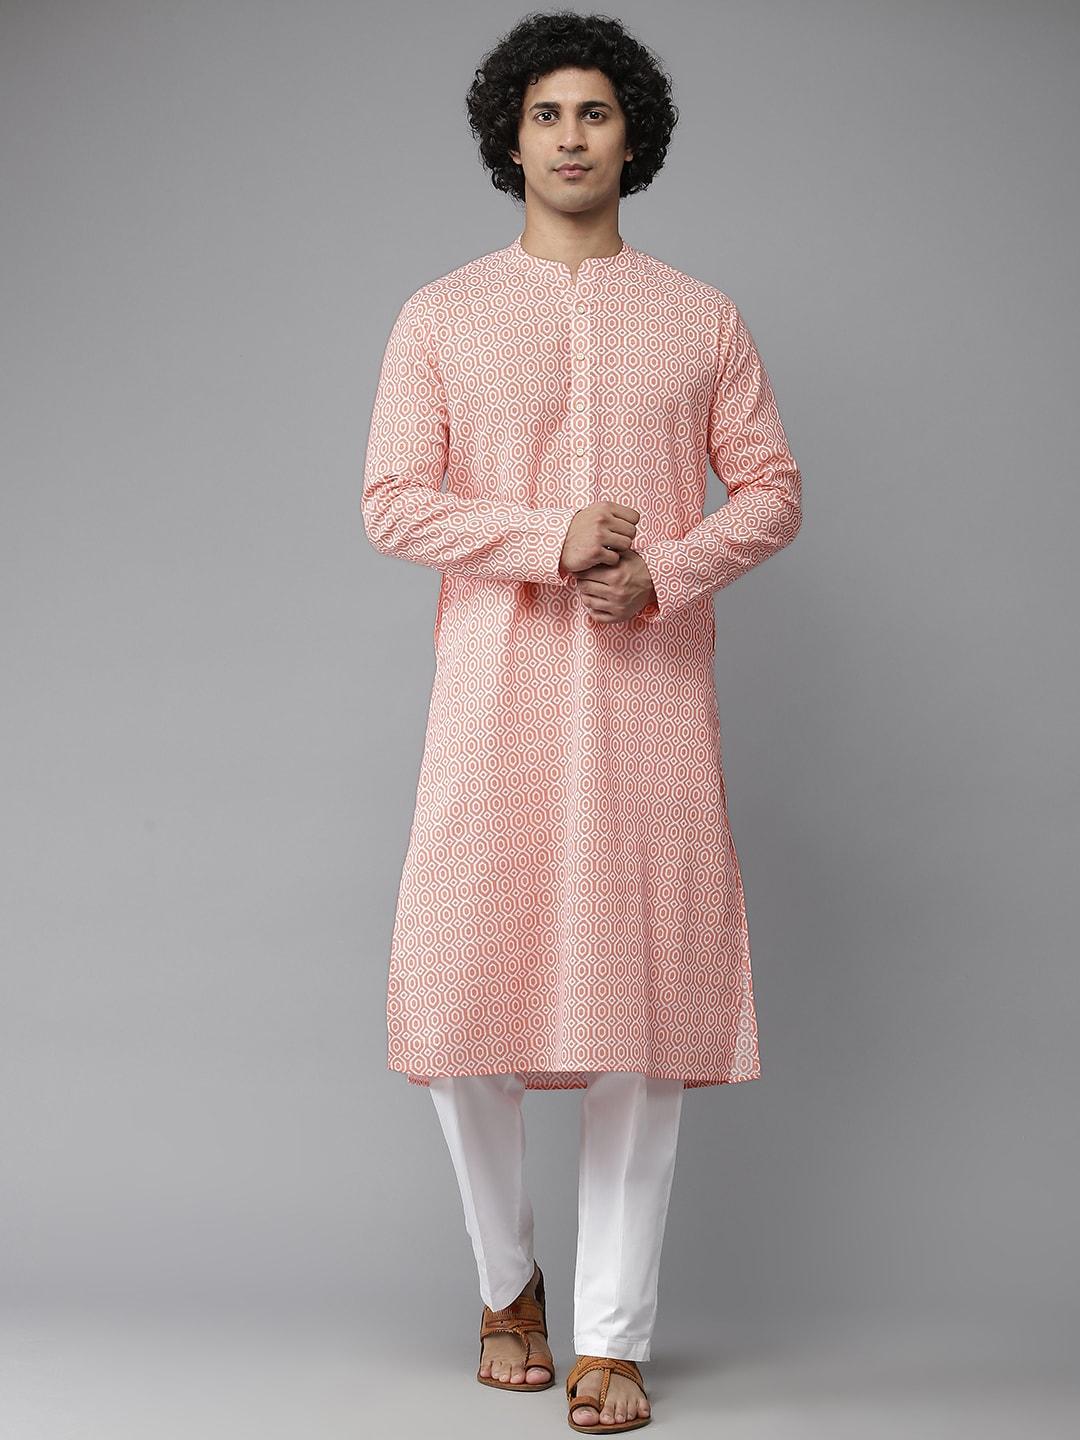 see designs men peach-coloured & wwhite printed pure cotton kurta with pyjamas